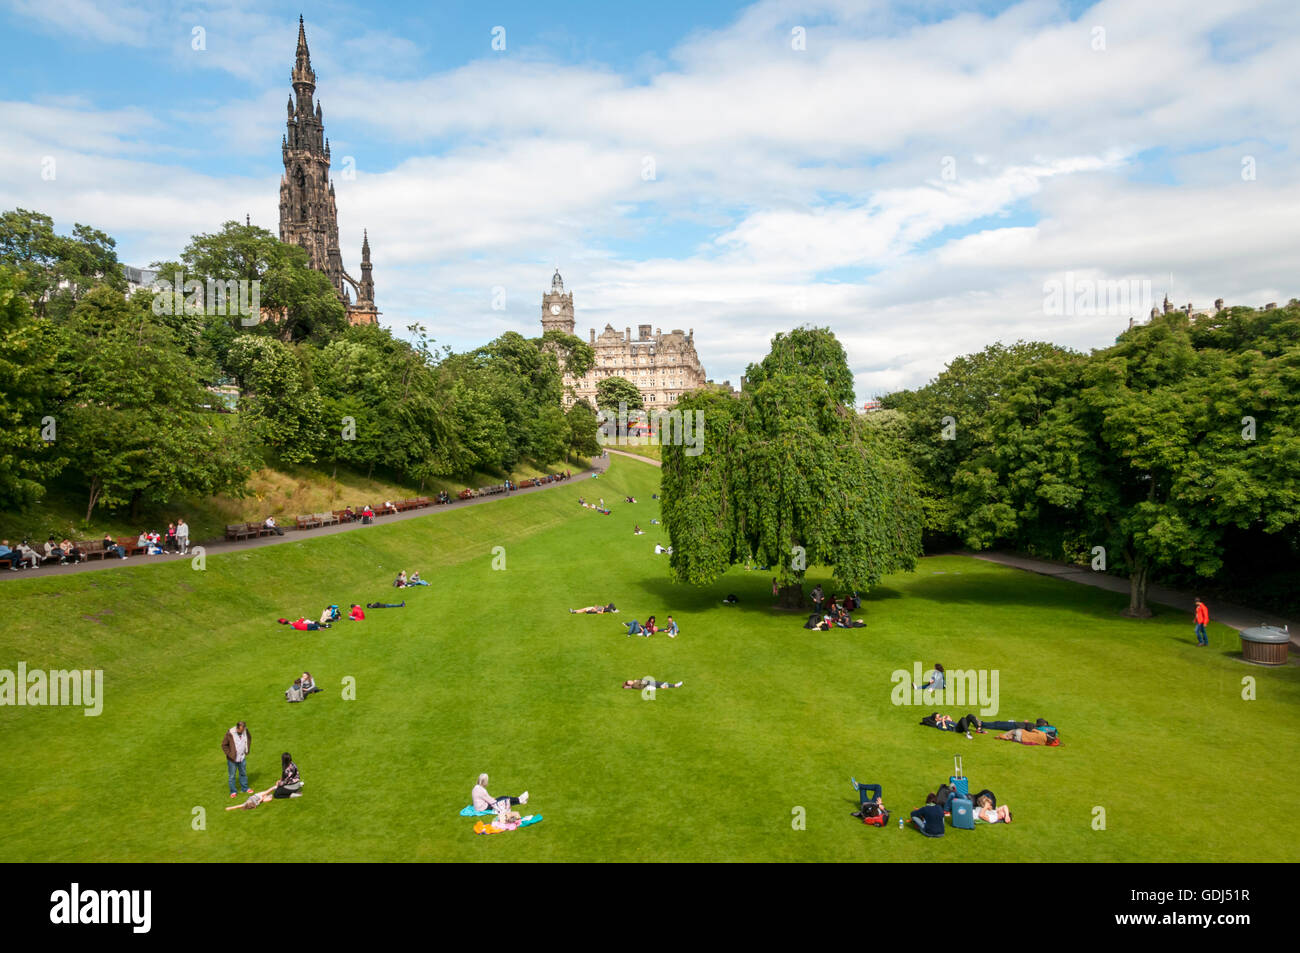 Este de Princes Street Gardens en Edimburgo, Escocia, con el Monumento a Scott a la izquierda y el Hotel Balmoral en segundo plano. Foto de stock